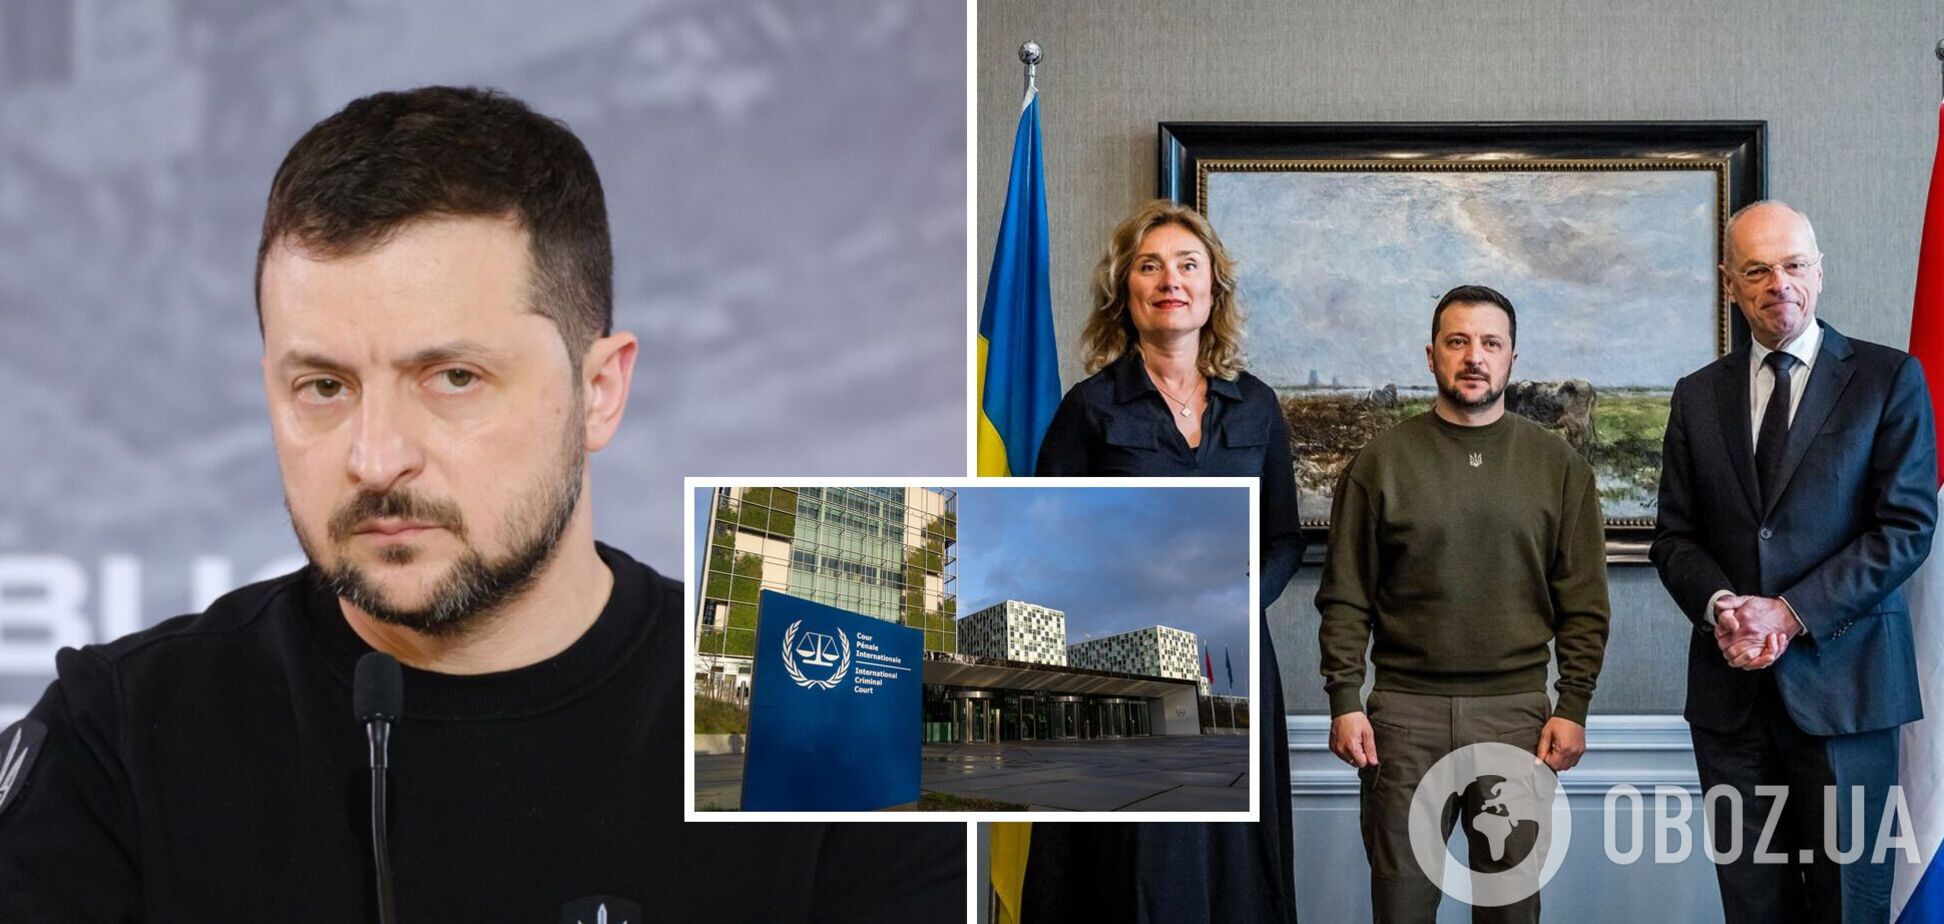 'Мы должны укрепить крылья Украины': Зеленский прибыл с визитом в Нидерланды и призвал предоставить Украине истребители. Видео